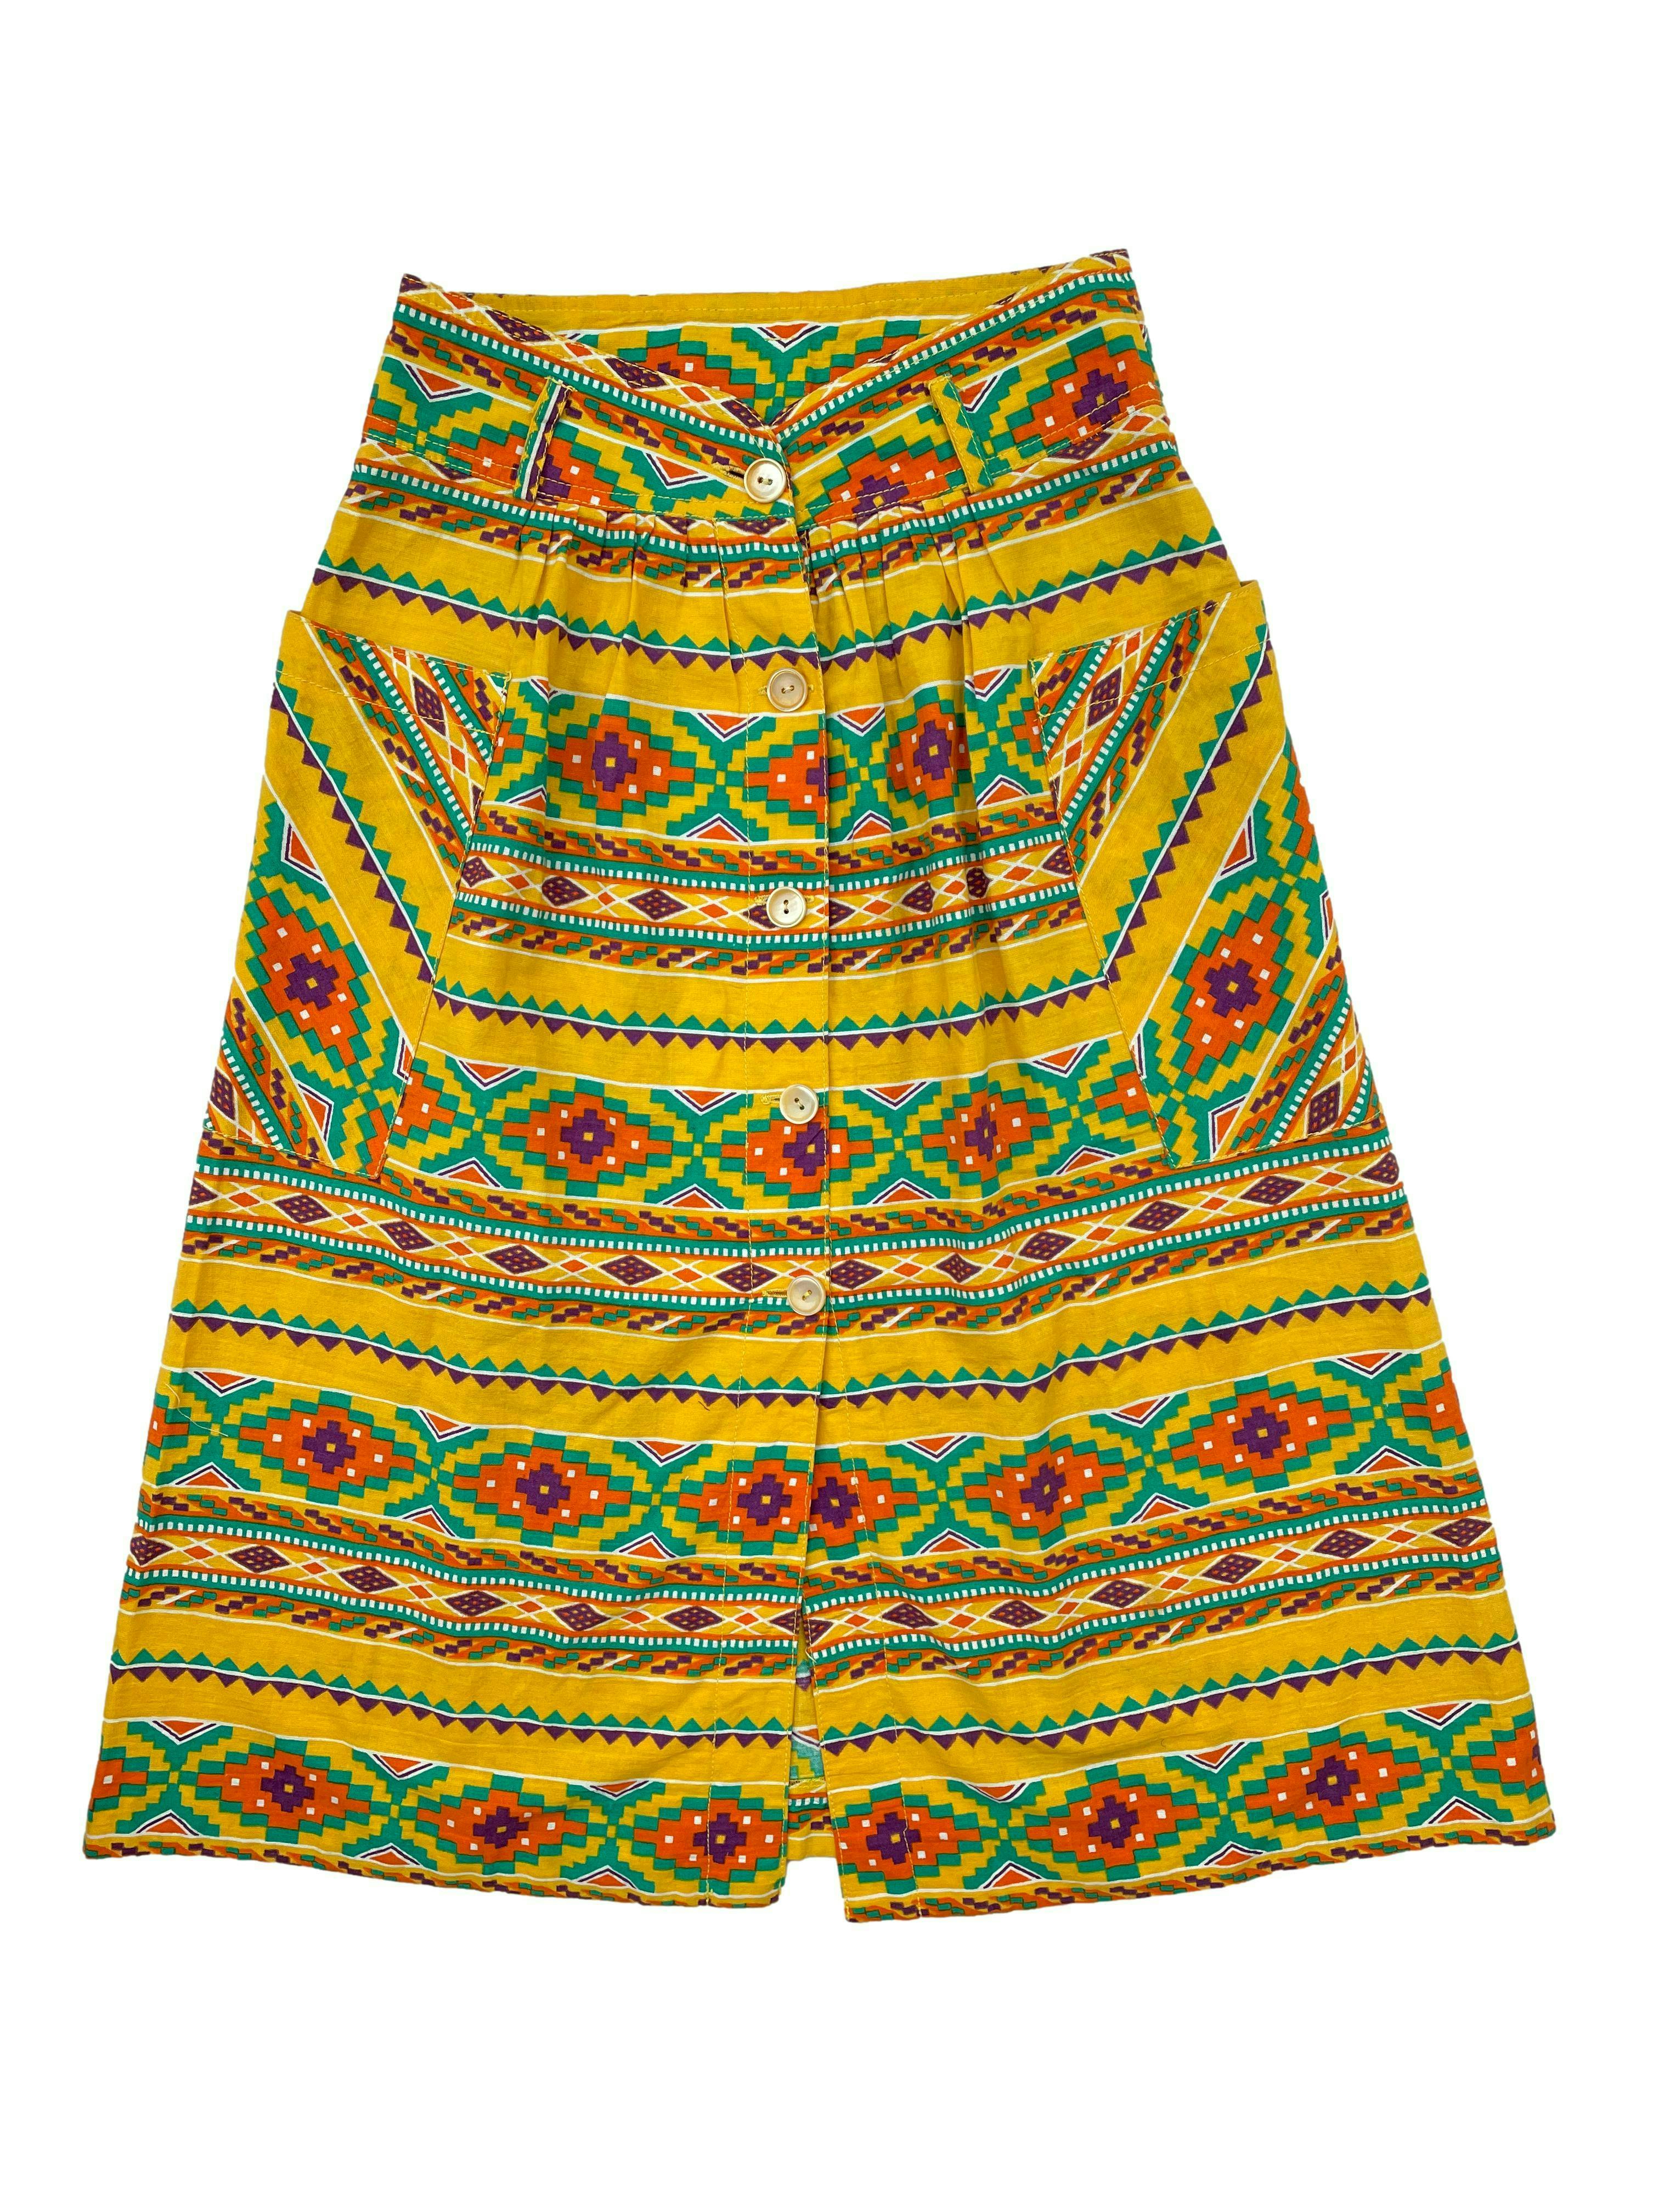 Falda midi vintage amarilla con estampado tribal, bolsillos laterales y botones frontales. Cintura 64cm, Largo 70cm.